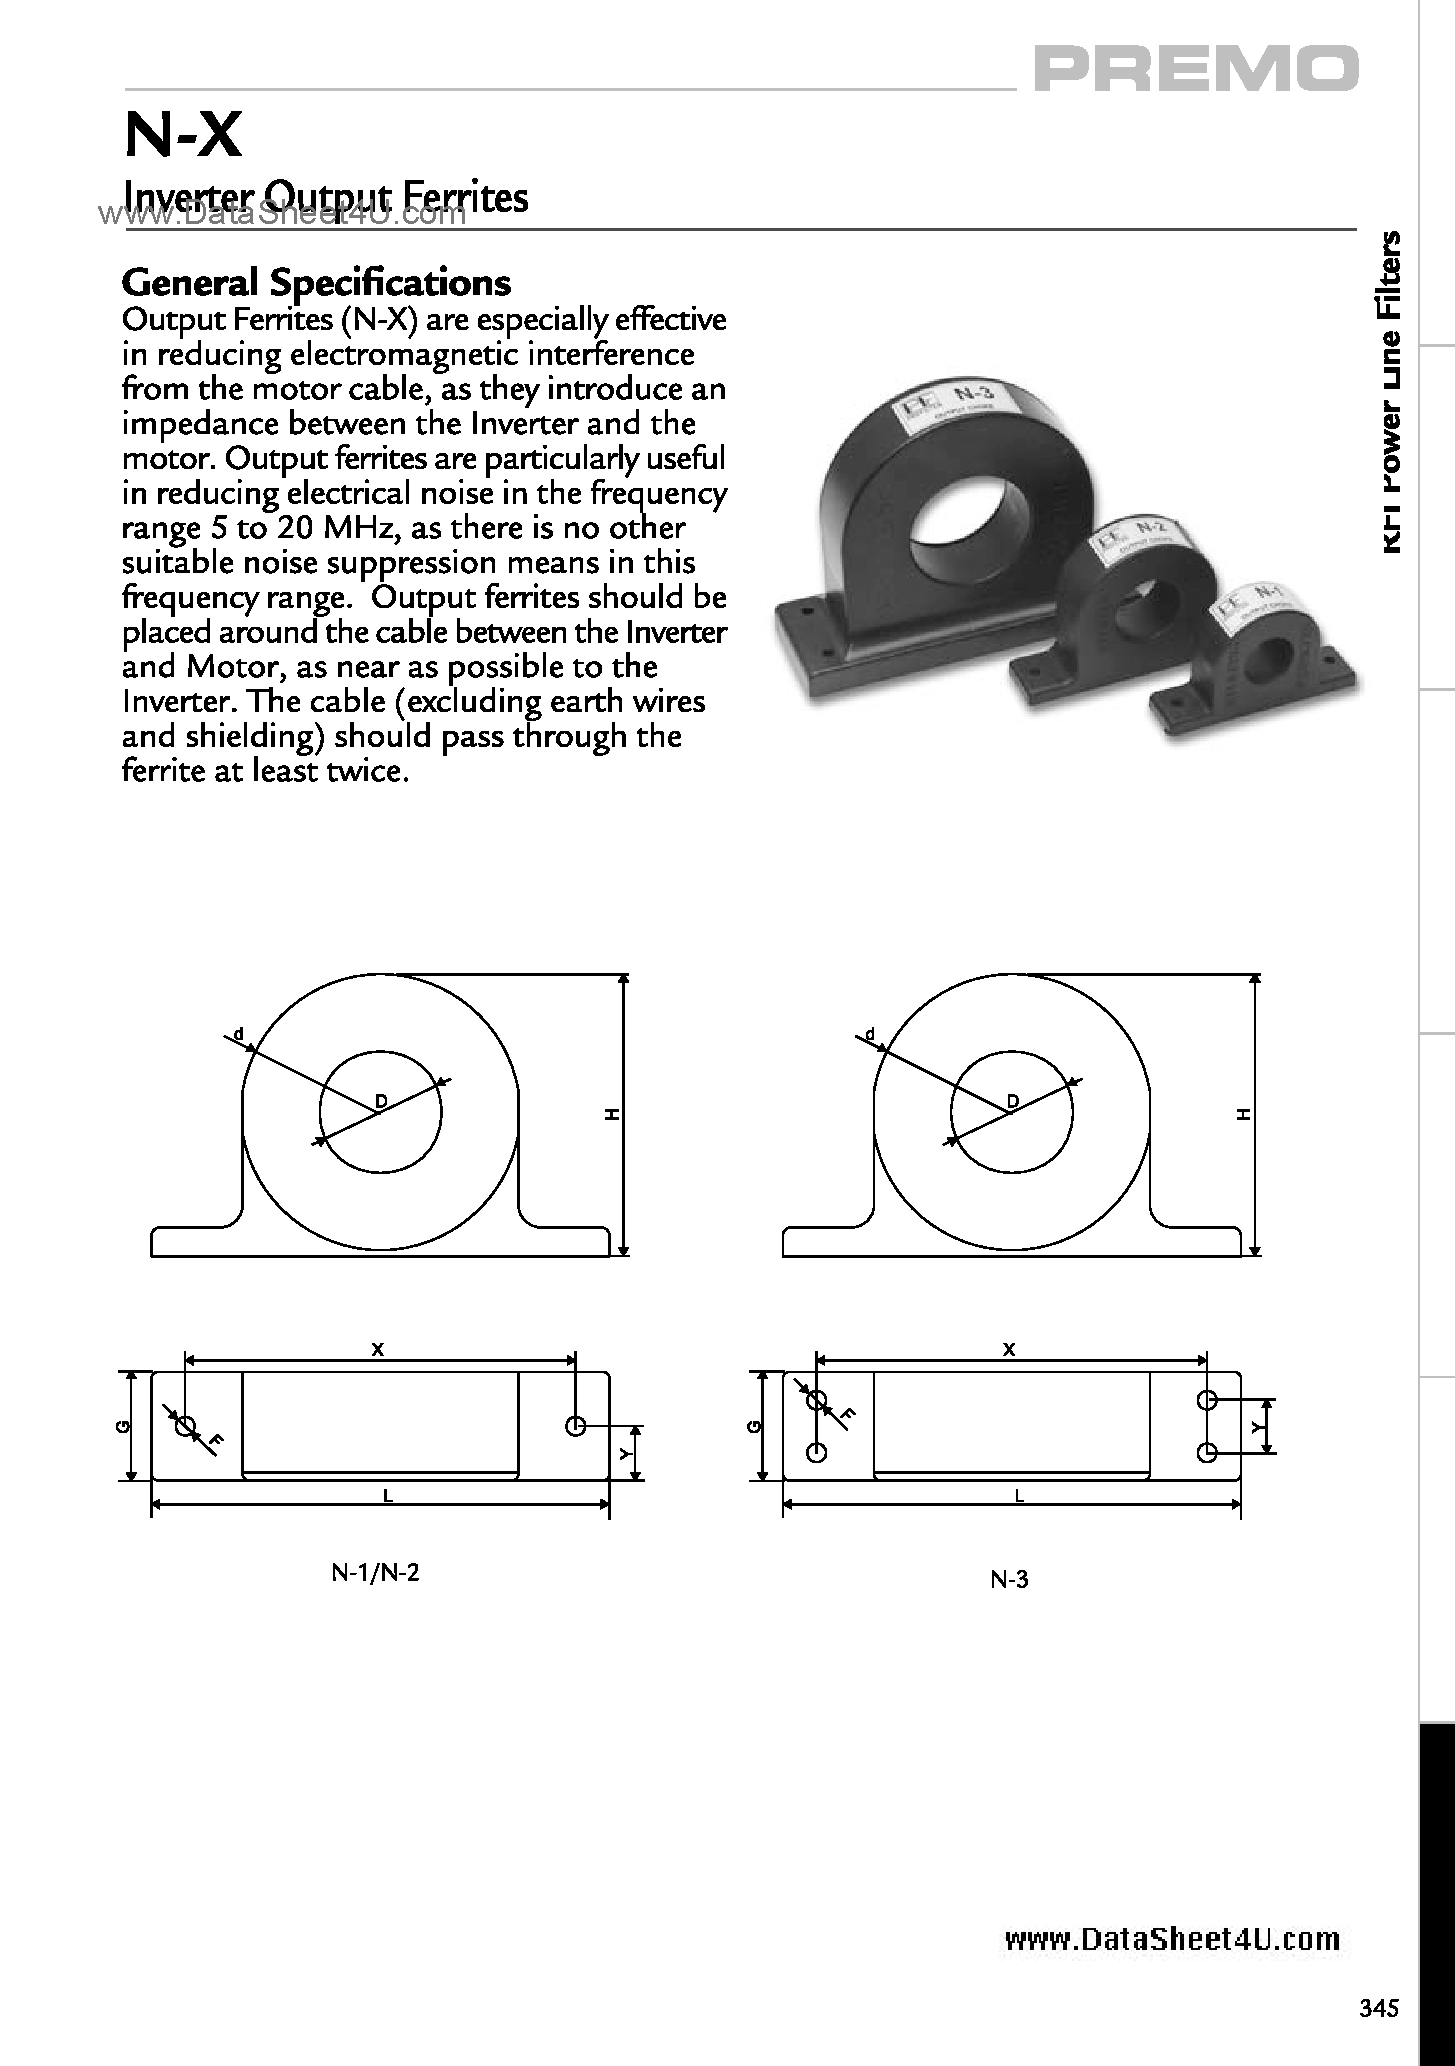 Даташит N-X - Output Ferrites - N-X Inverter страница 1